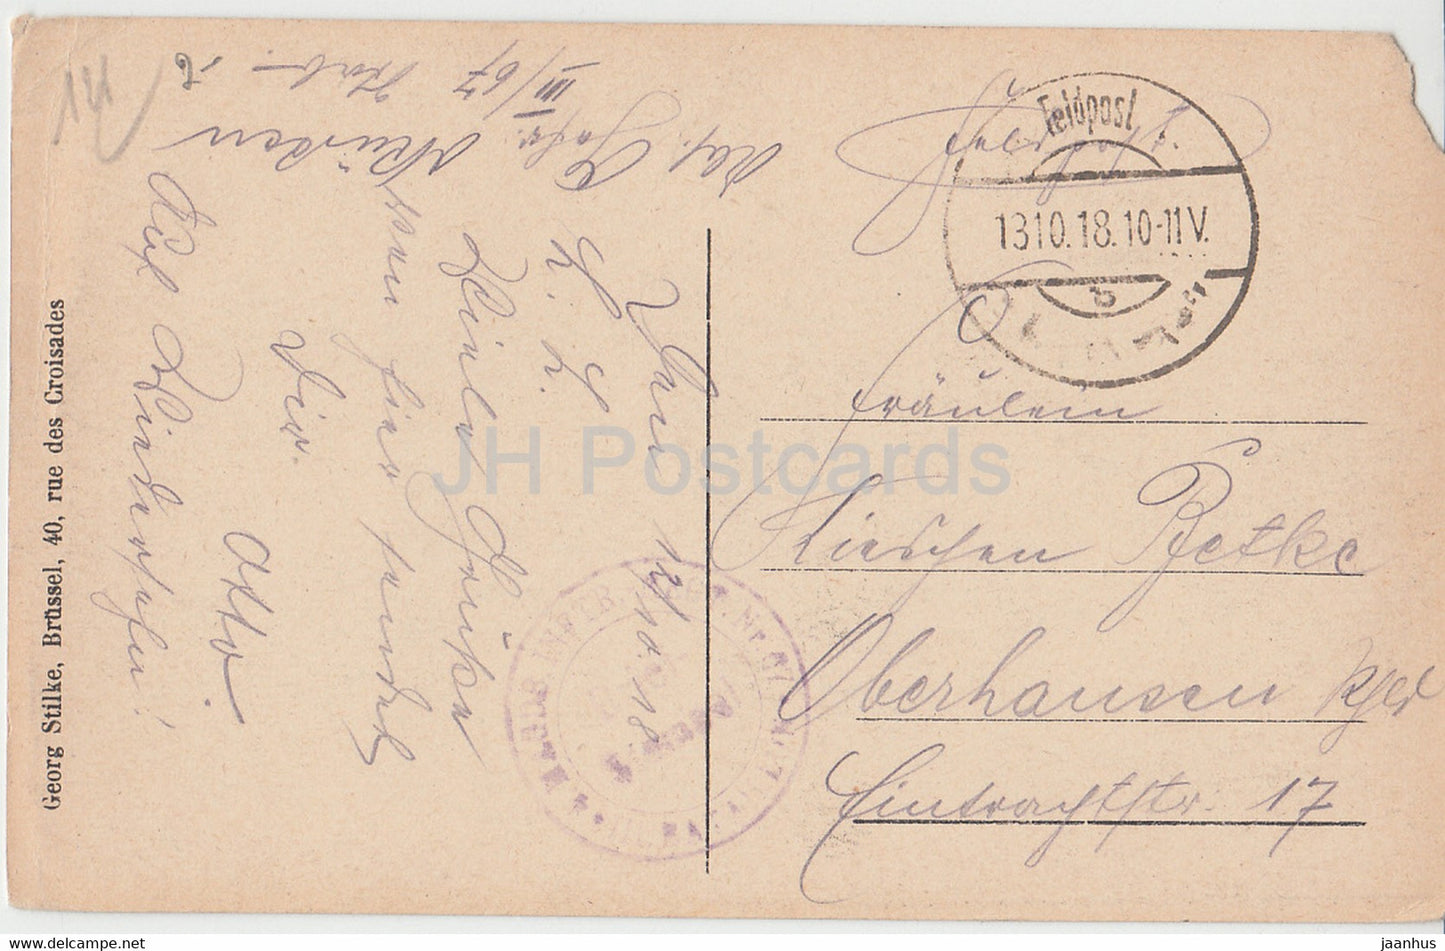 Die Kirche - Kirche - 68 - Feldpost - alte Postkarte - 1918 - Belgien - gebraucht